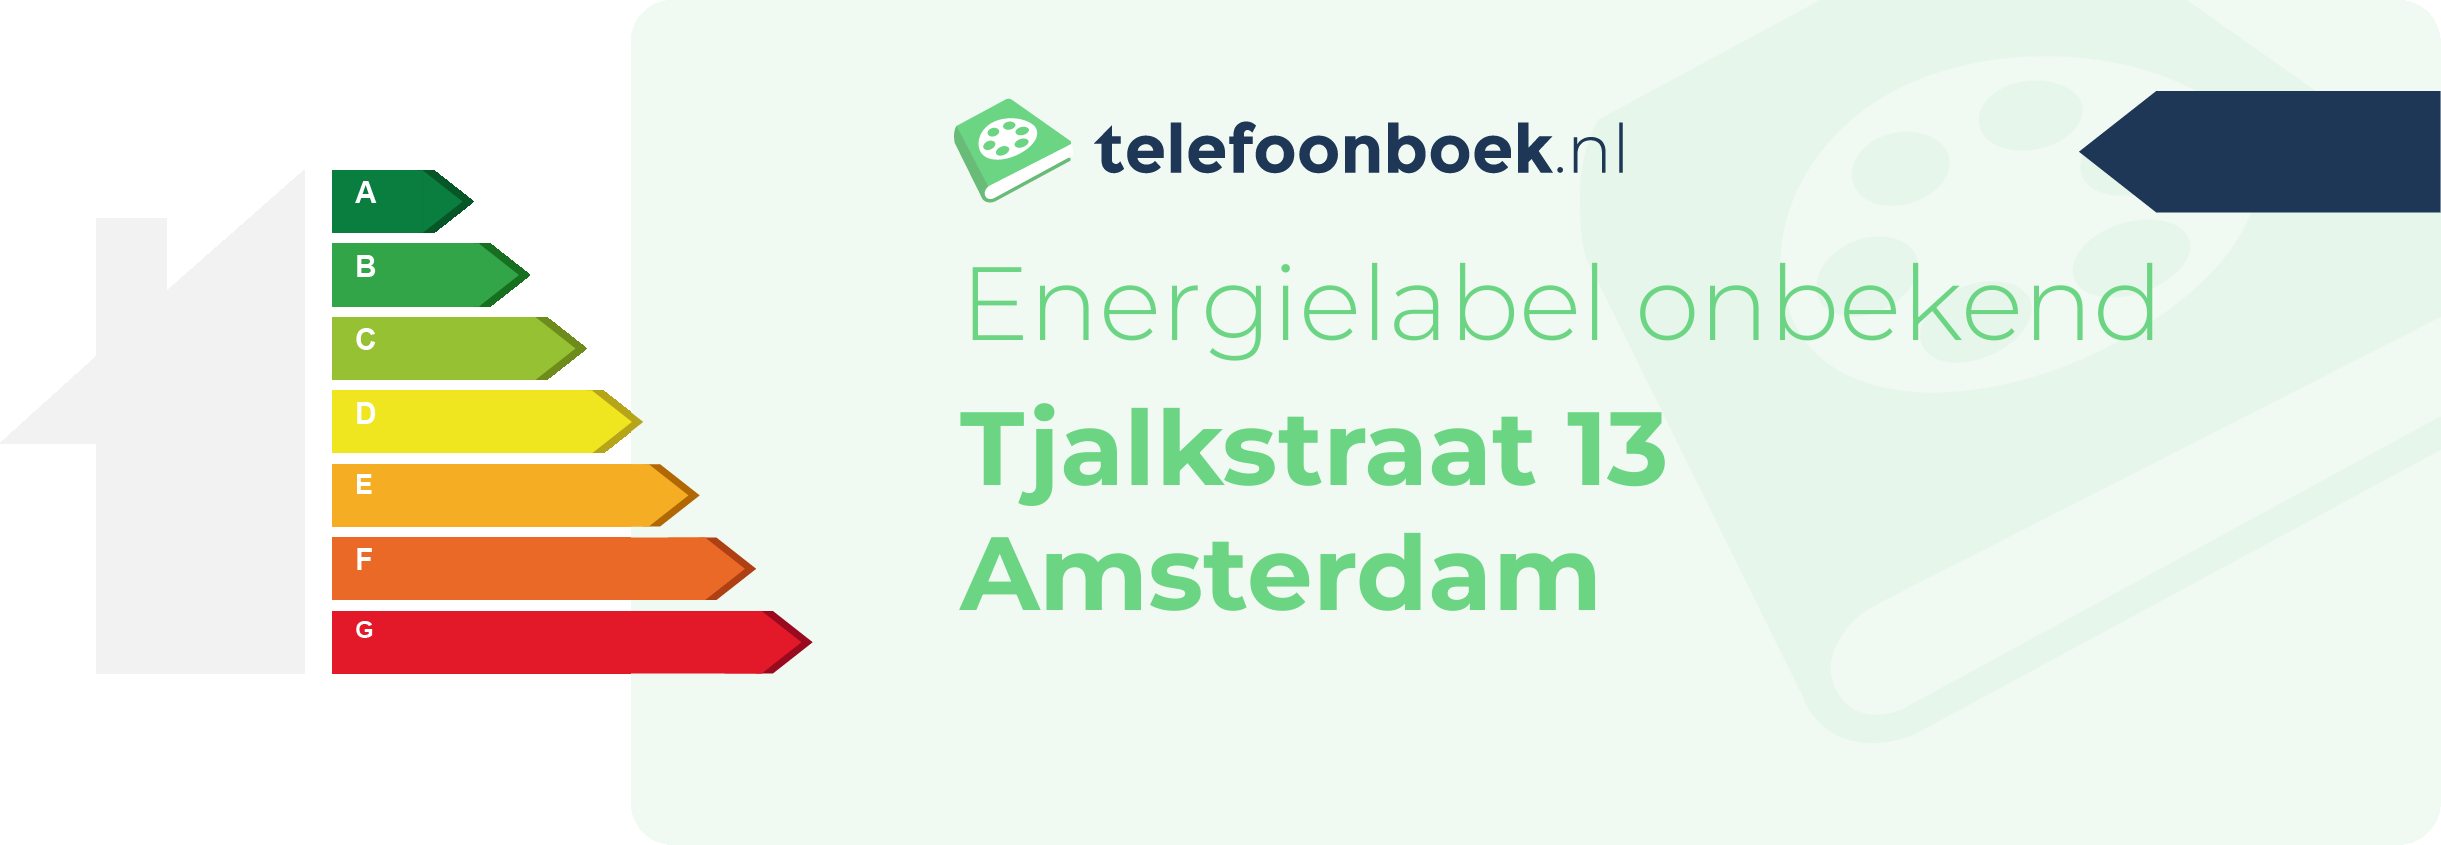 Energielabel Tjalkstraat 13 Amsterdam